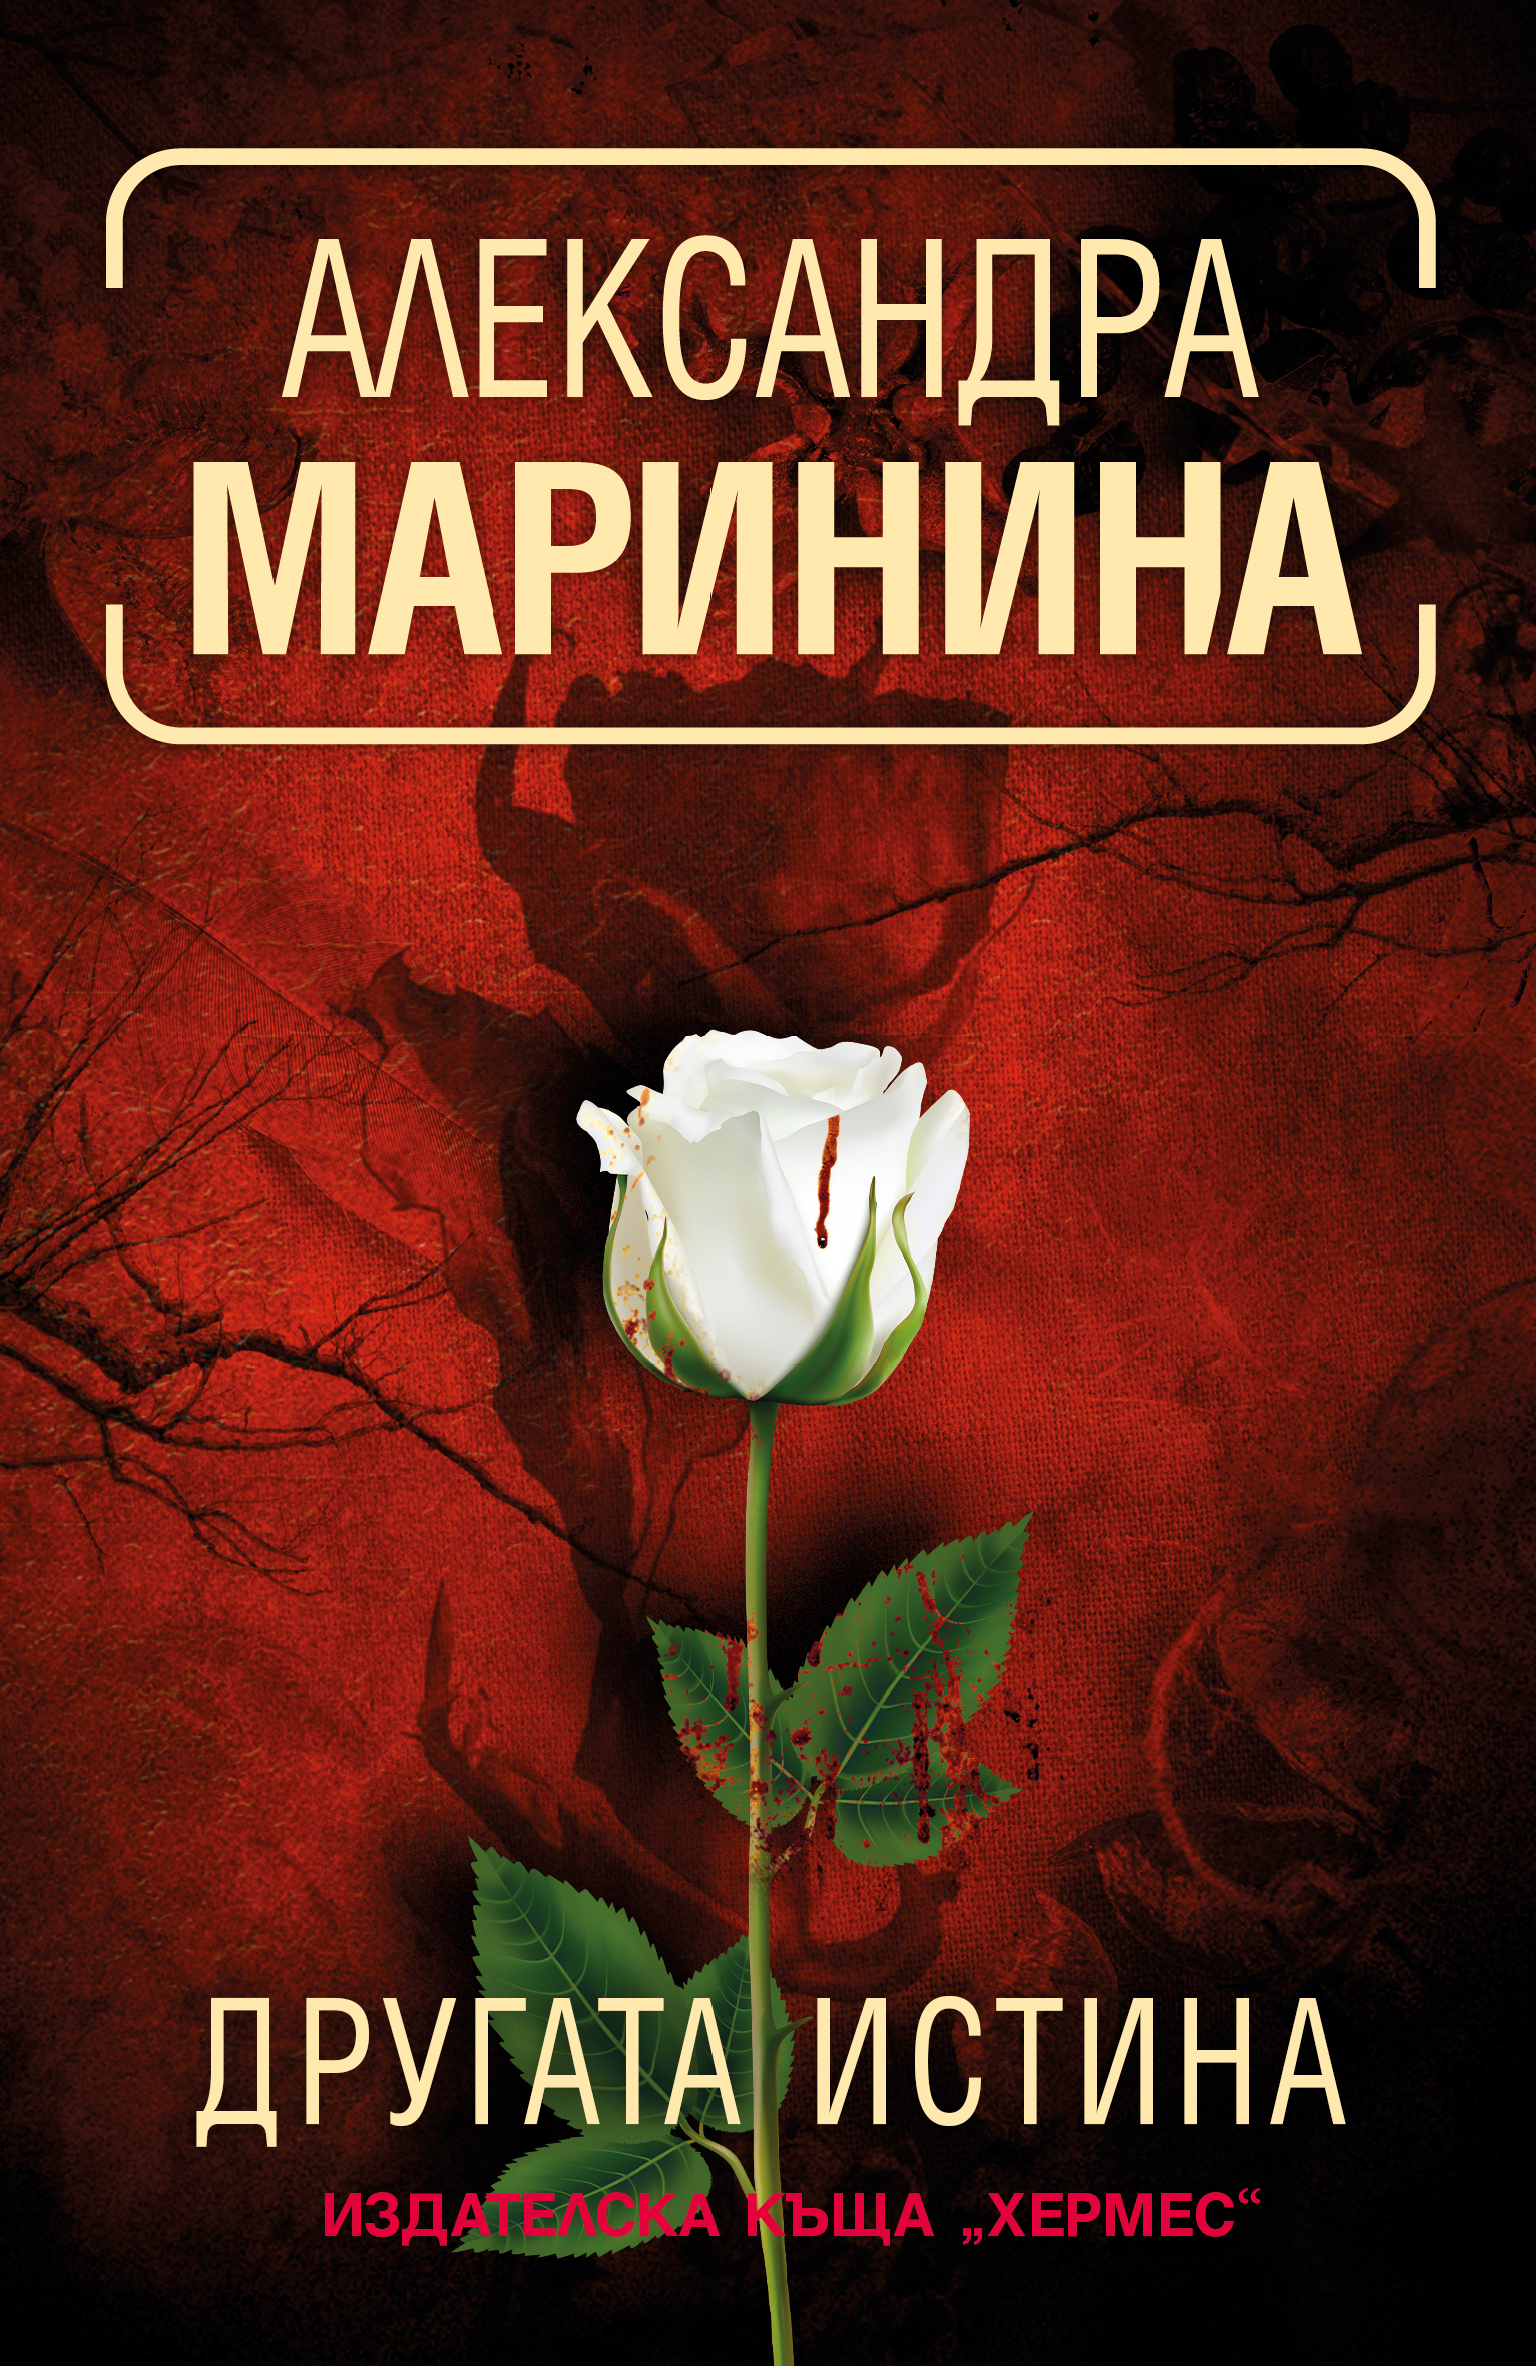 Александра Маринина: "Другата истина"